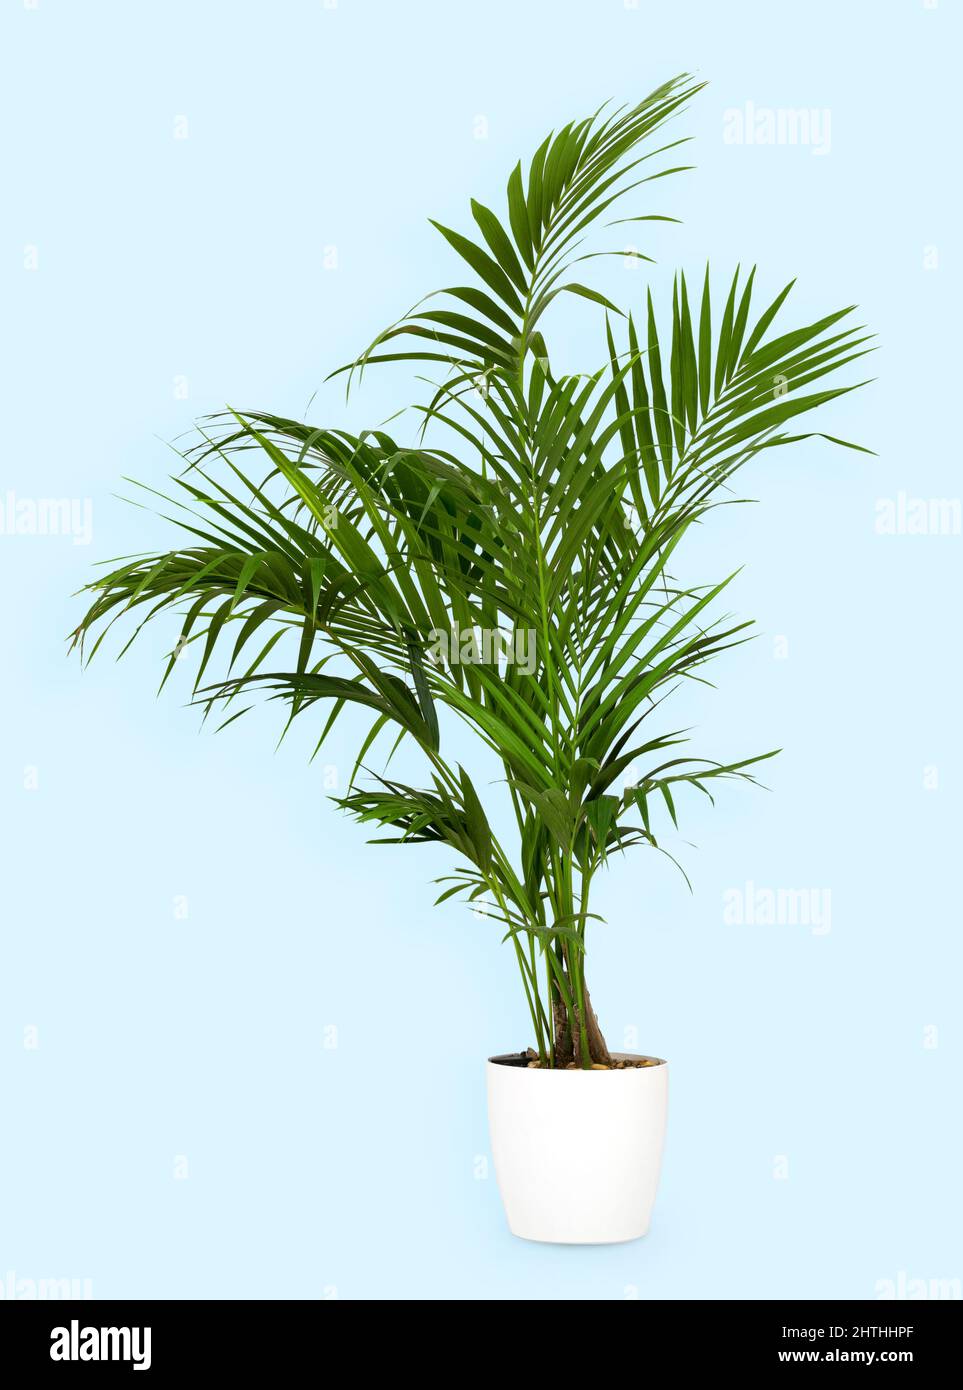 Gesunde grüne Kentia-Palme, die in einem weißen Blumentopf auf einem blauen Hintergrund wächst, mit Copyspace in einer Seitenansicht Stockfoto